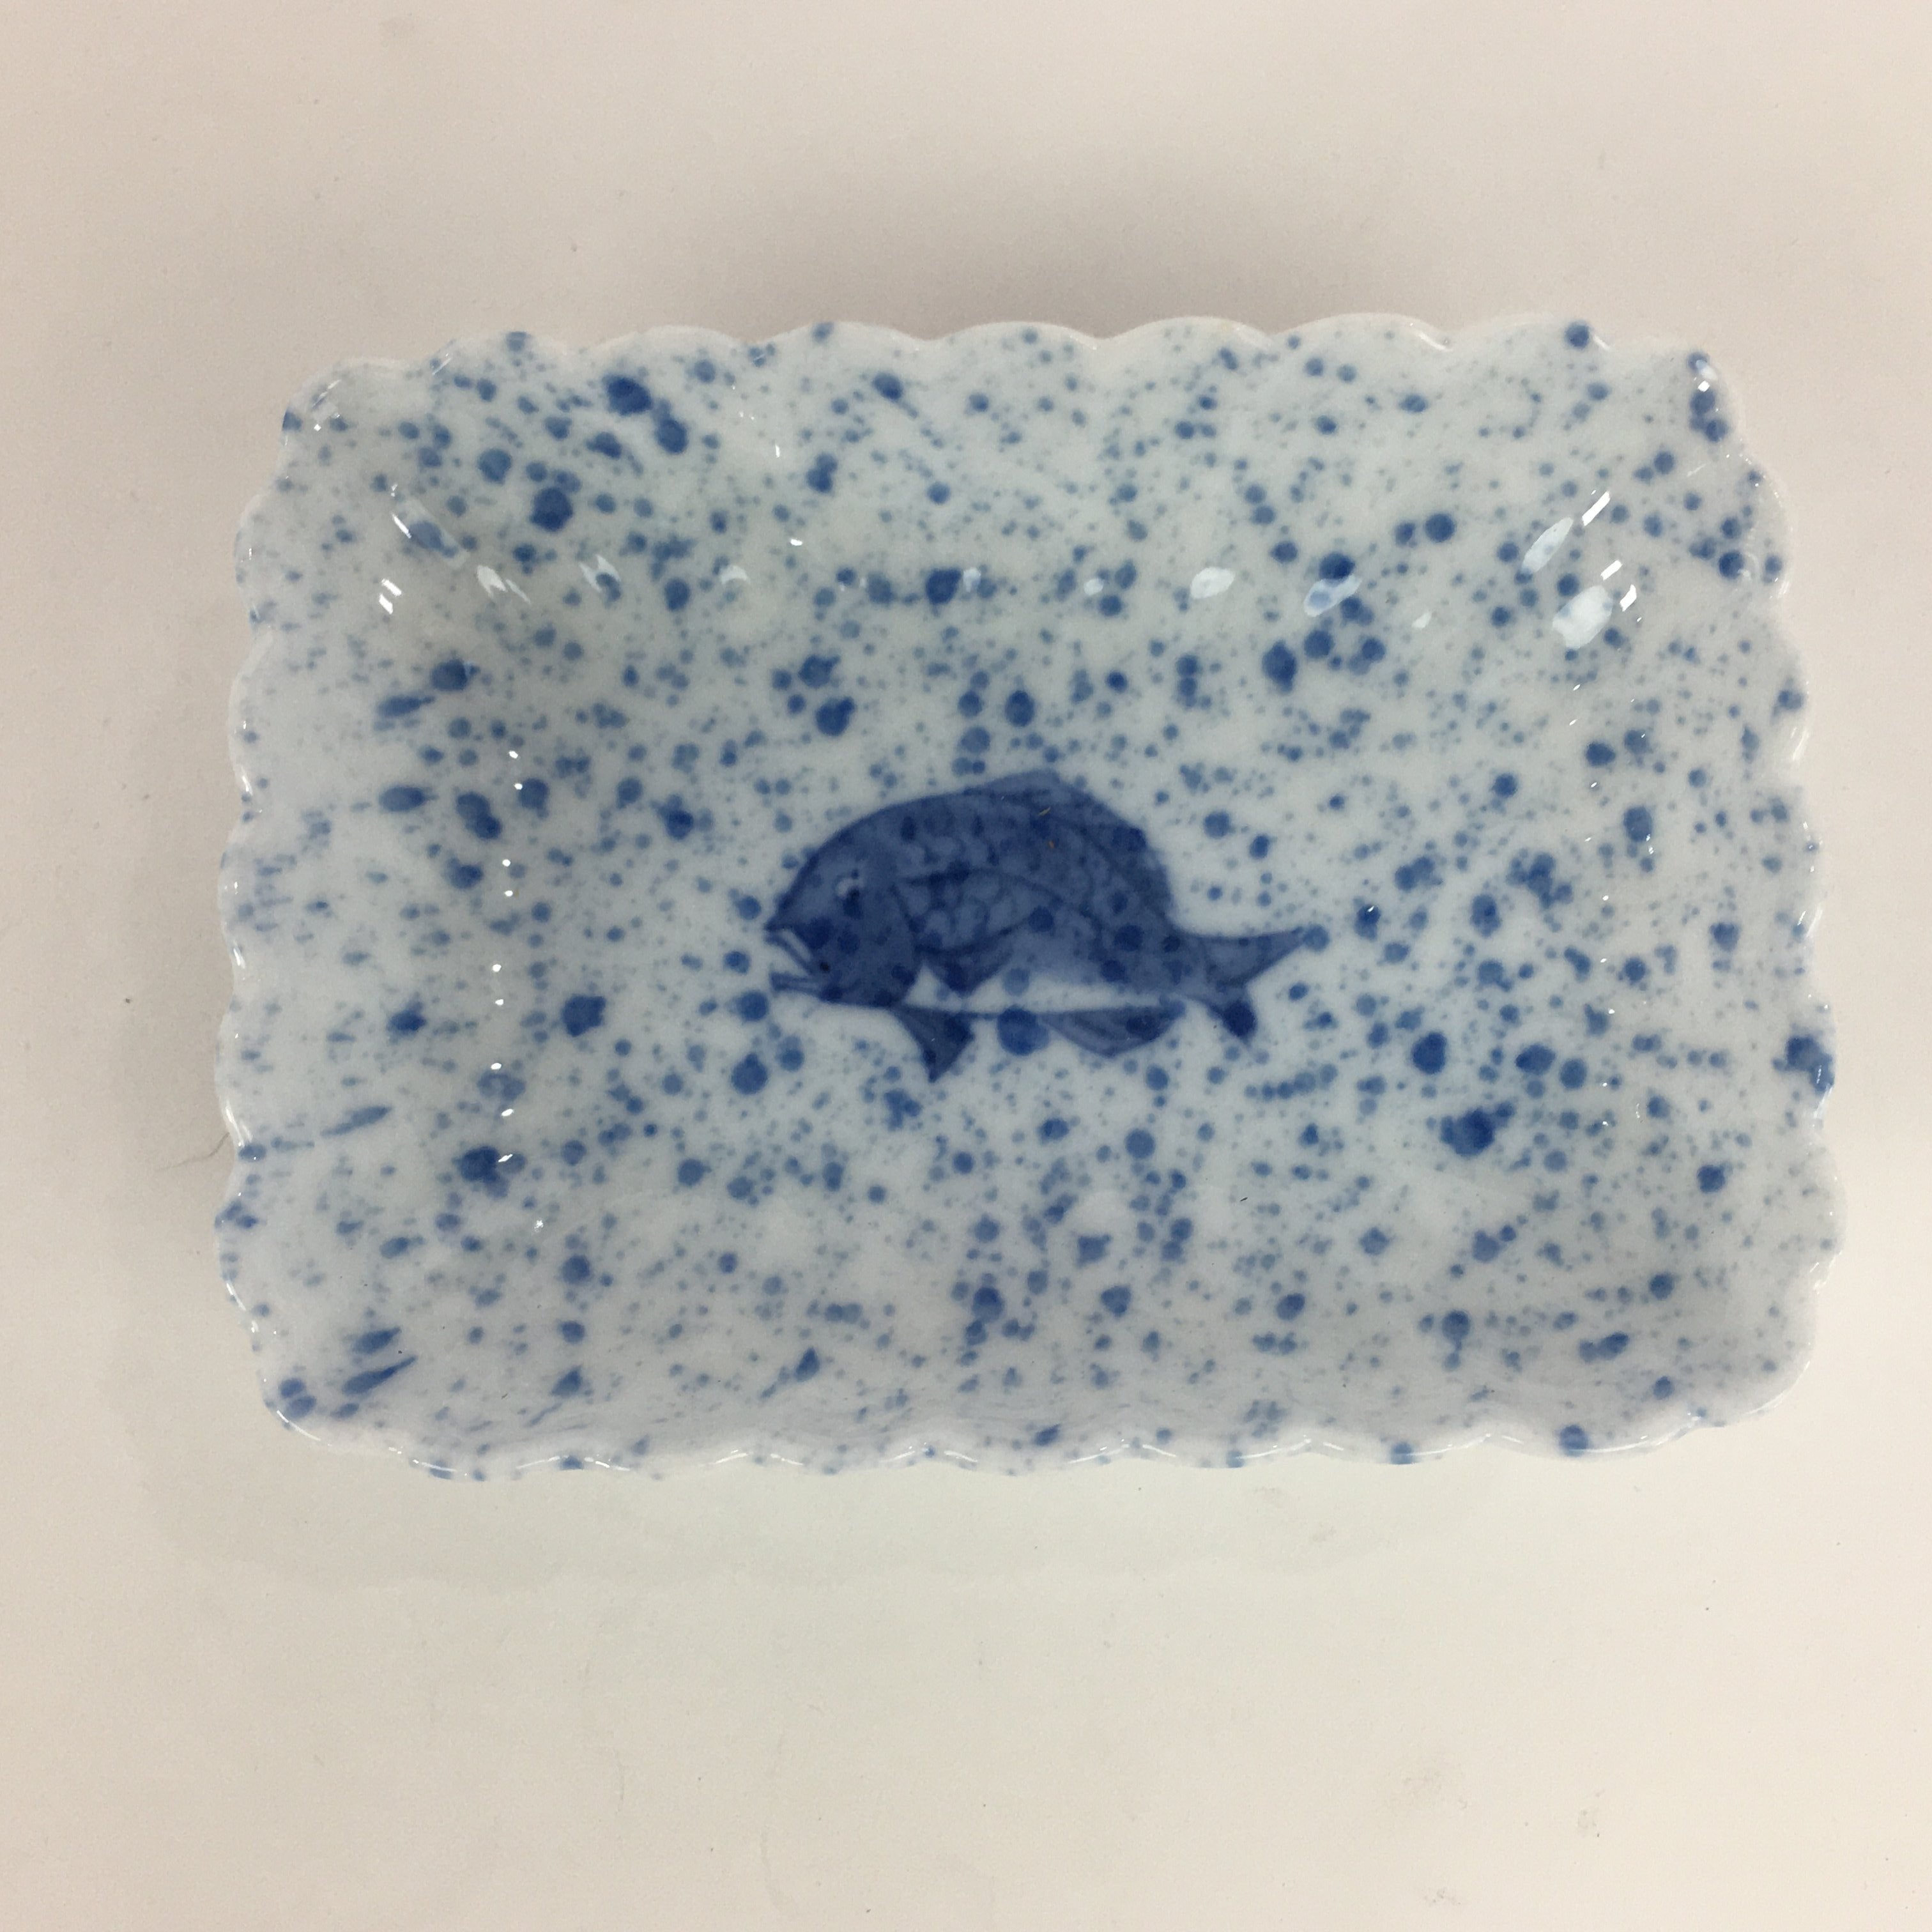 Japanese Porcelain Small Plate Vtg Rectangle Blue Sometsuke Plate Snapper PP713